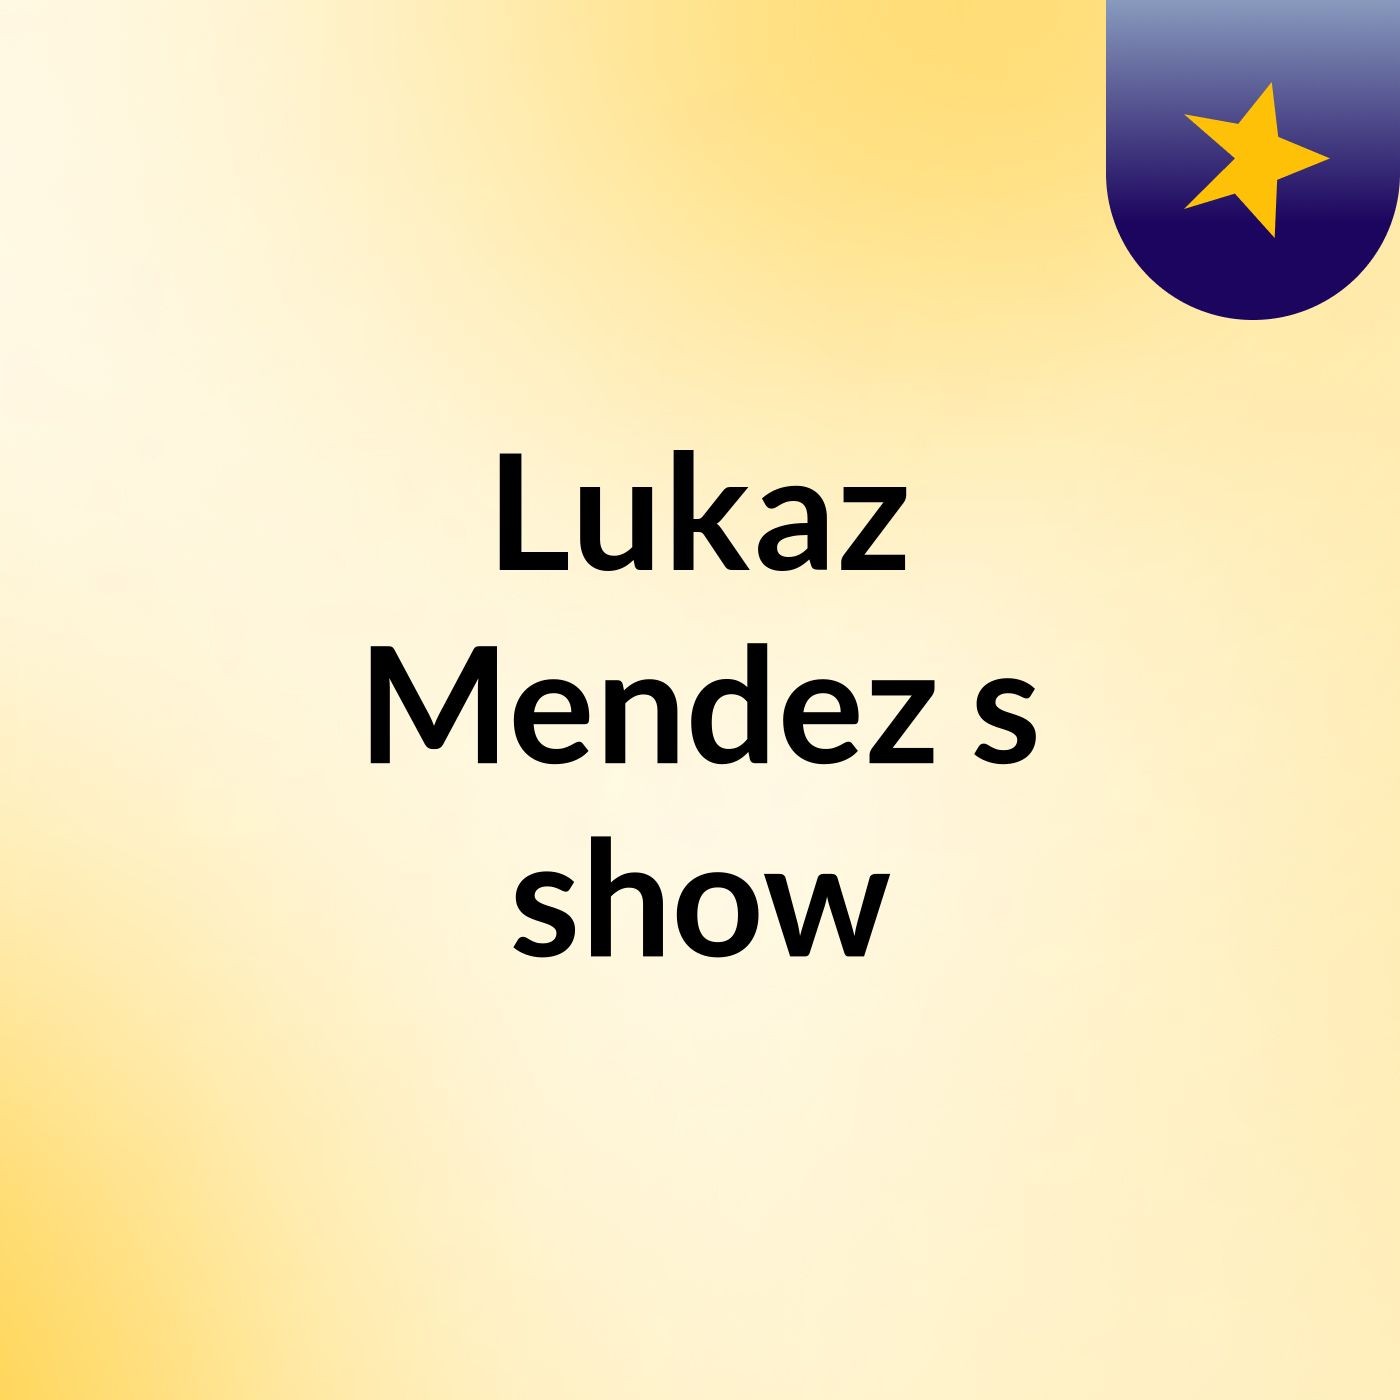 Lukaz Mendez's show